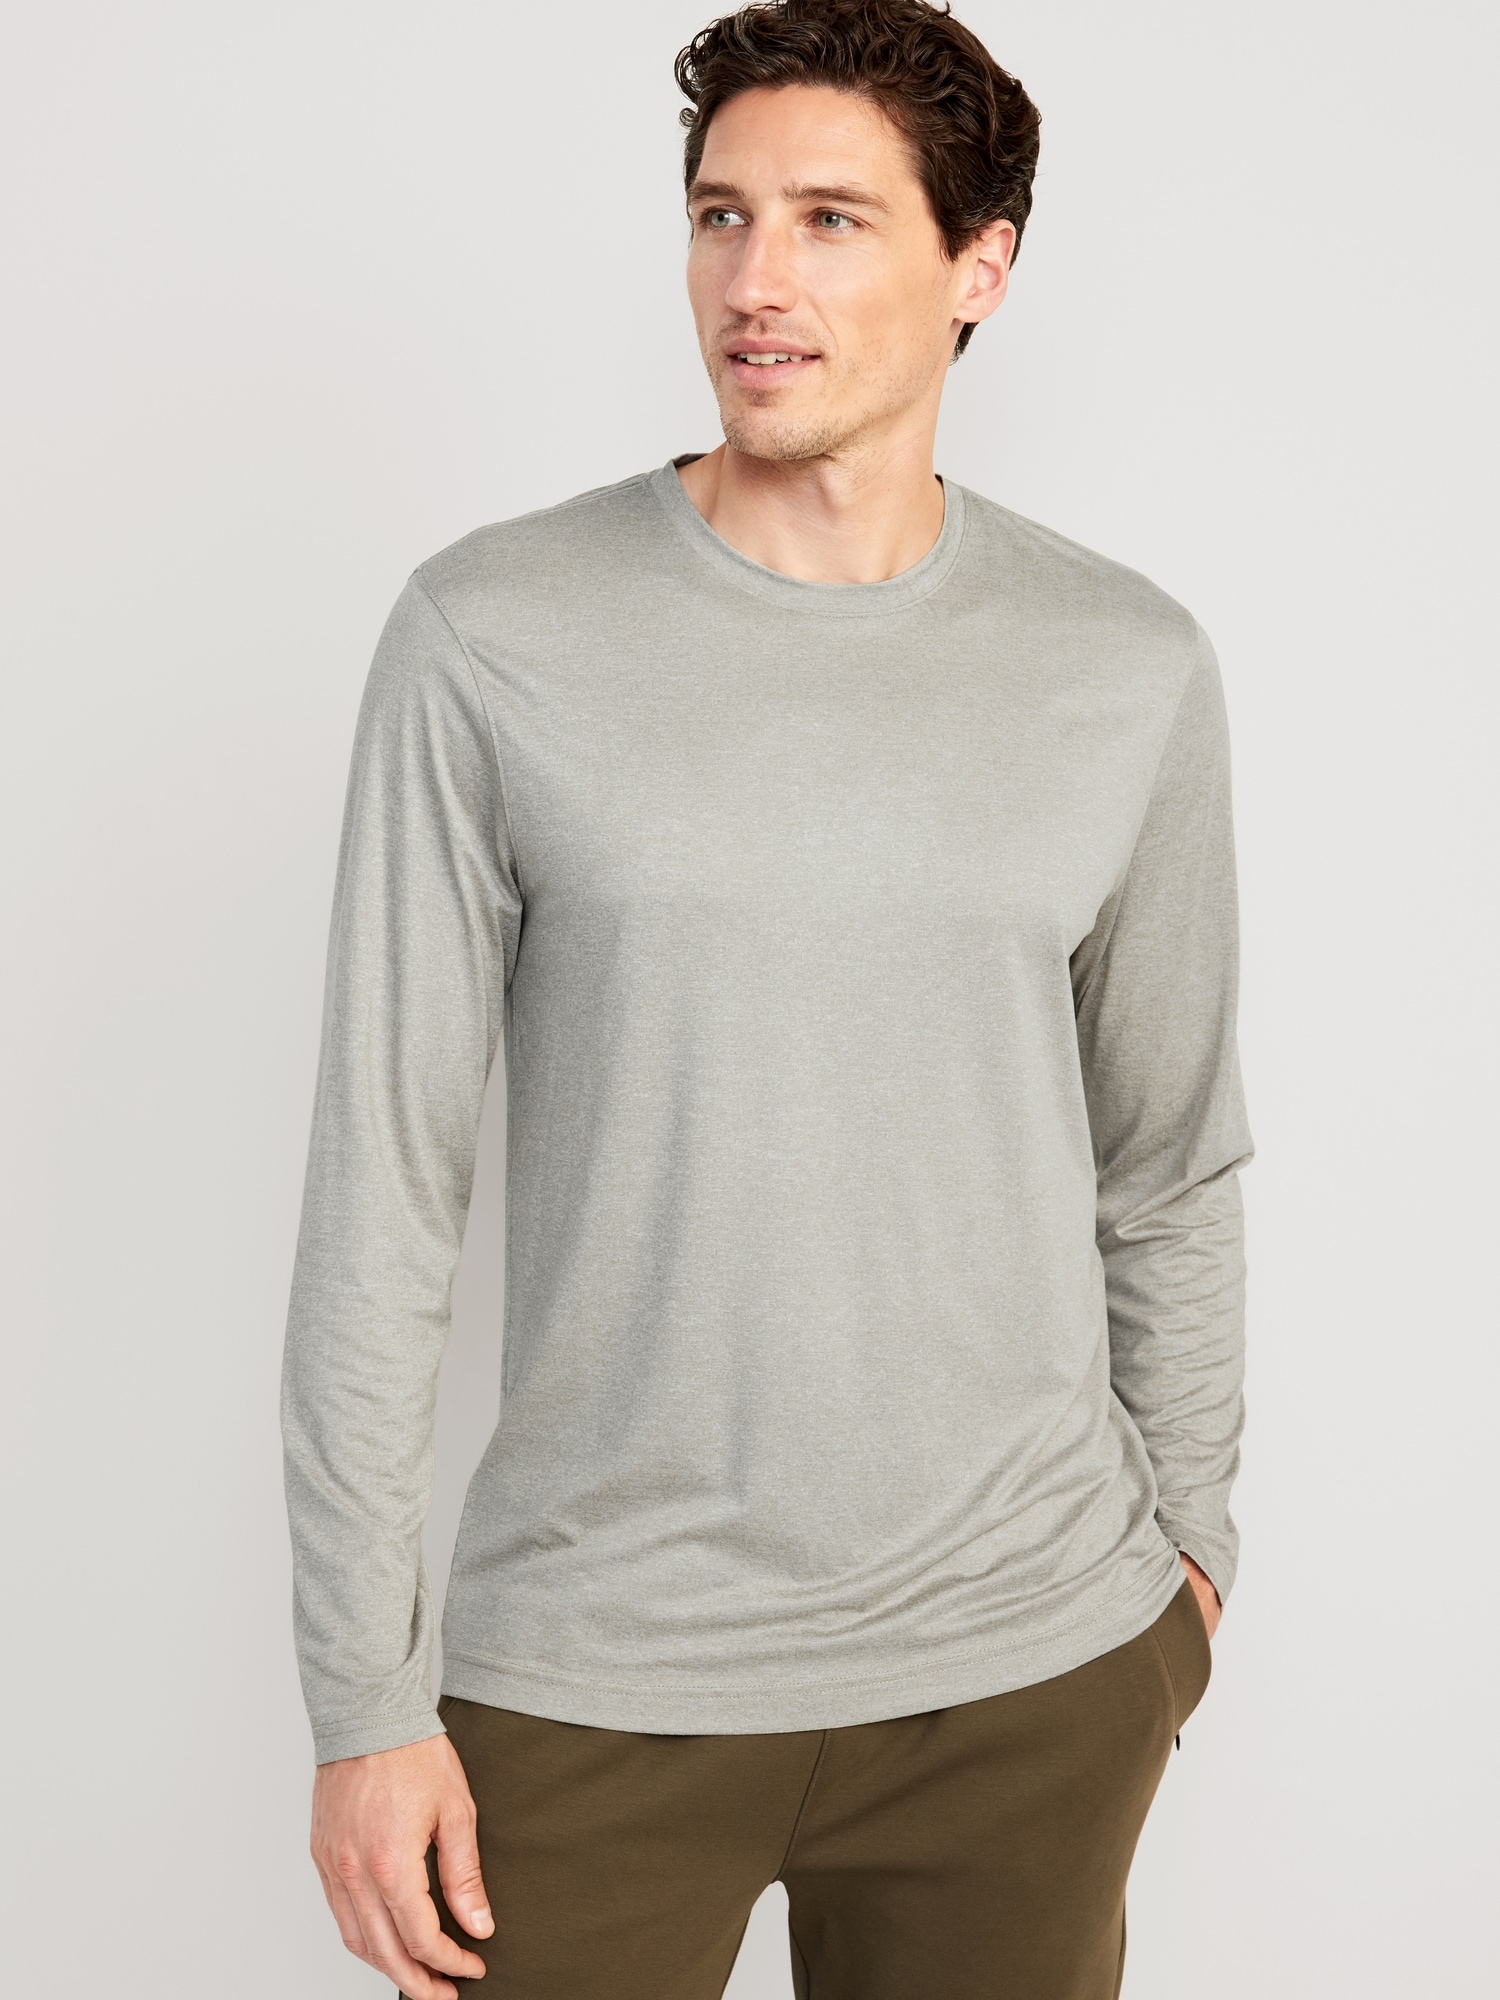 Cloud 94 Soft Long-Sleeve T-Shirt